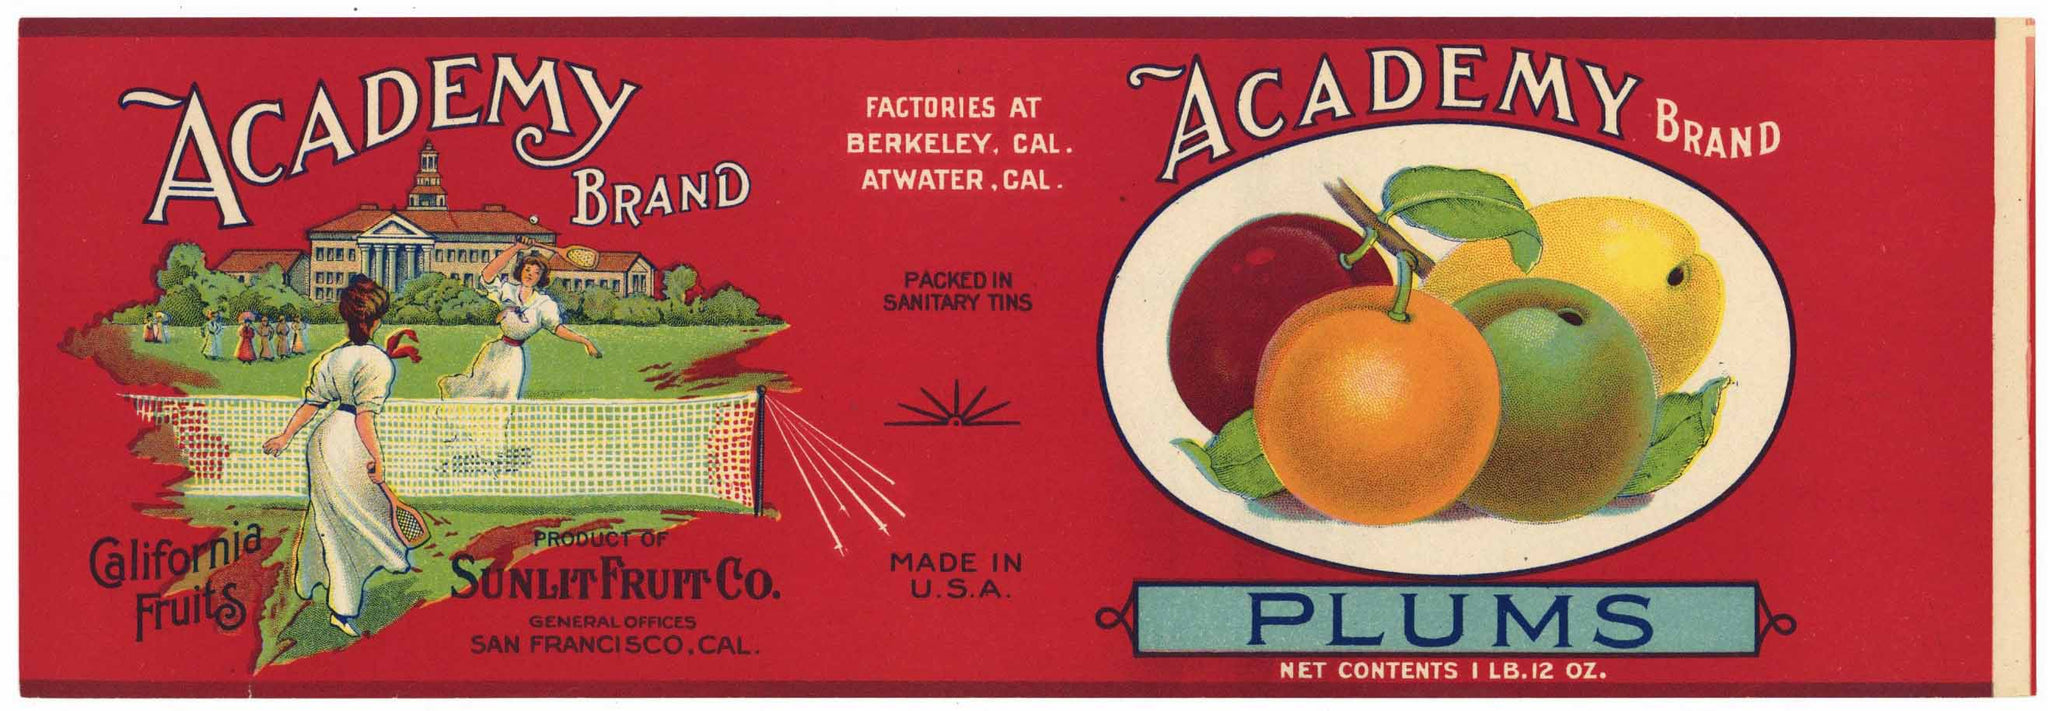 vintage food label